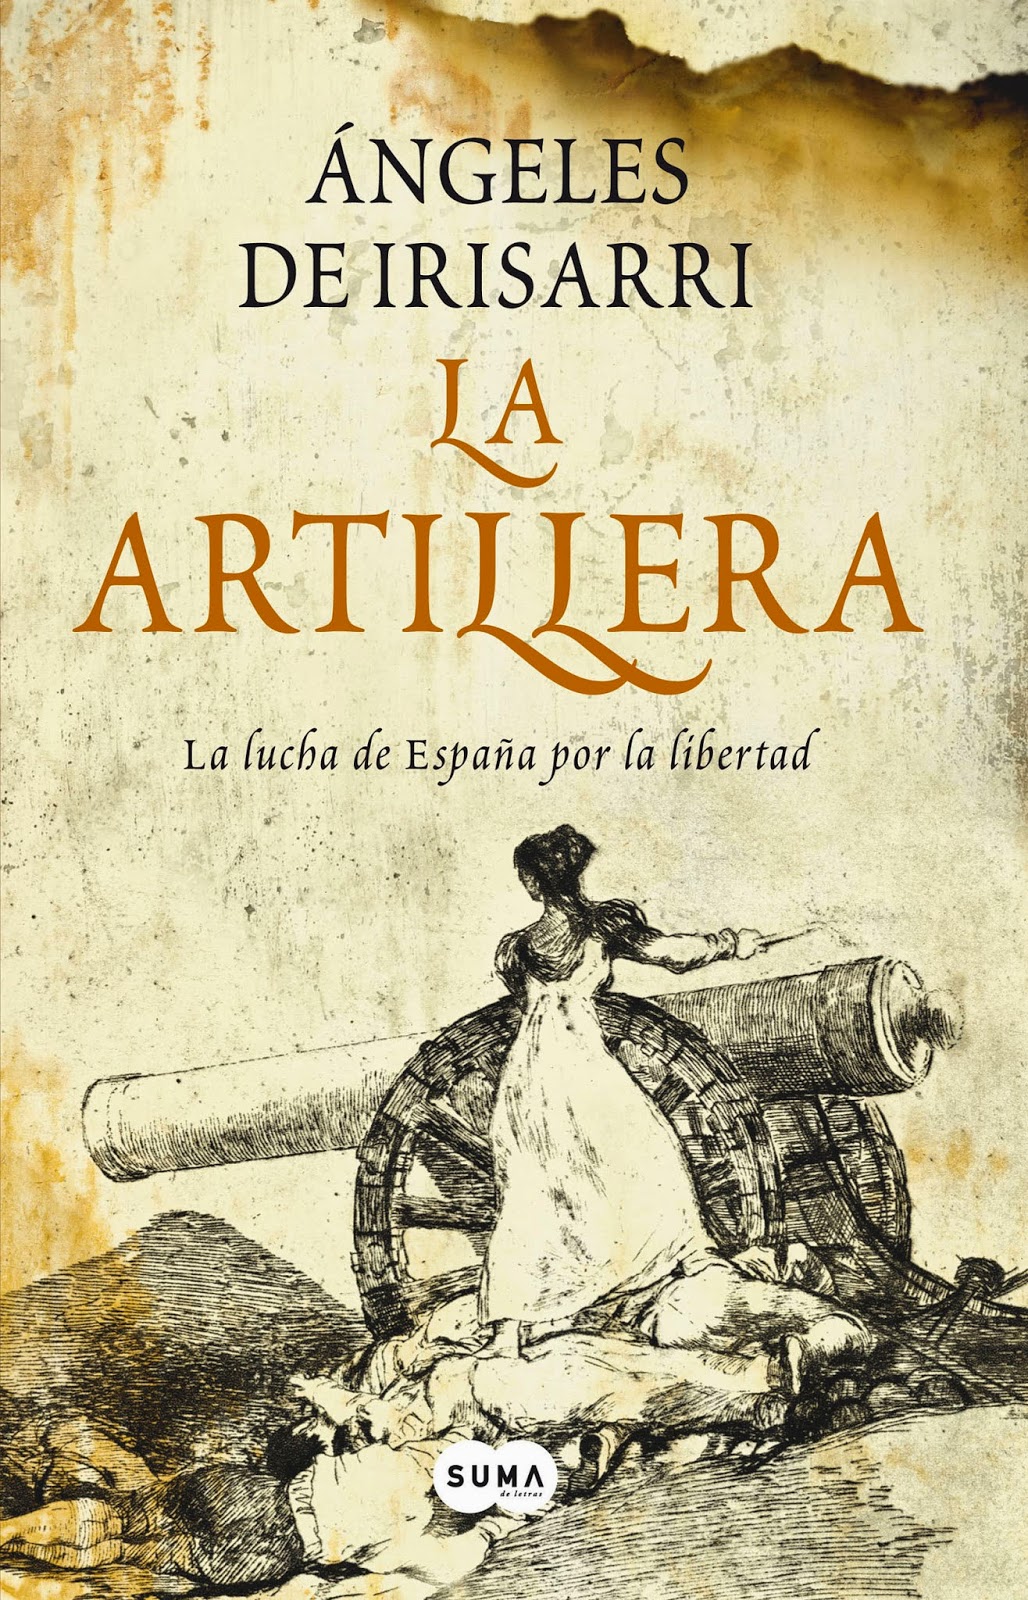 La artillera - Ángeles de Irisarri (2008)